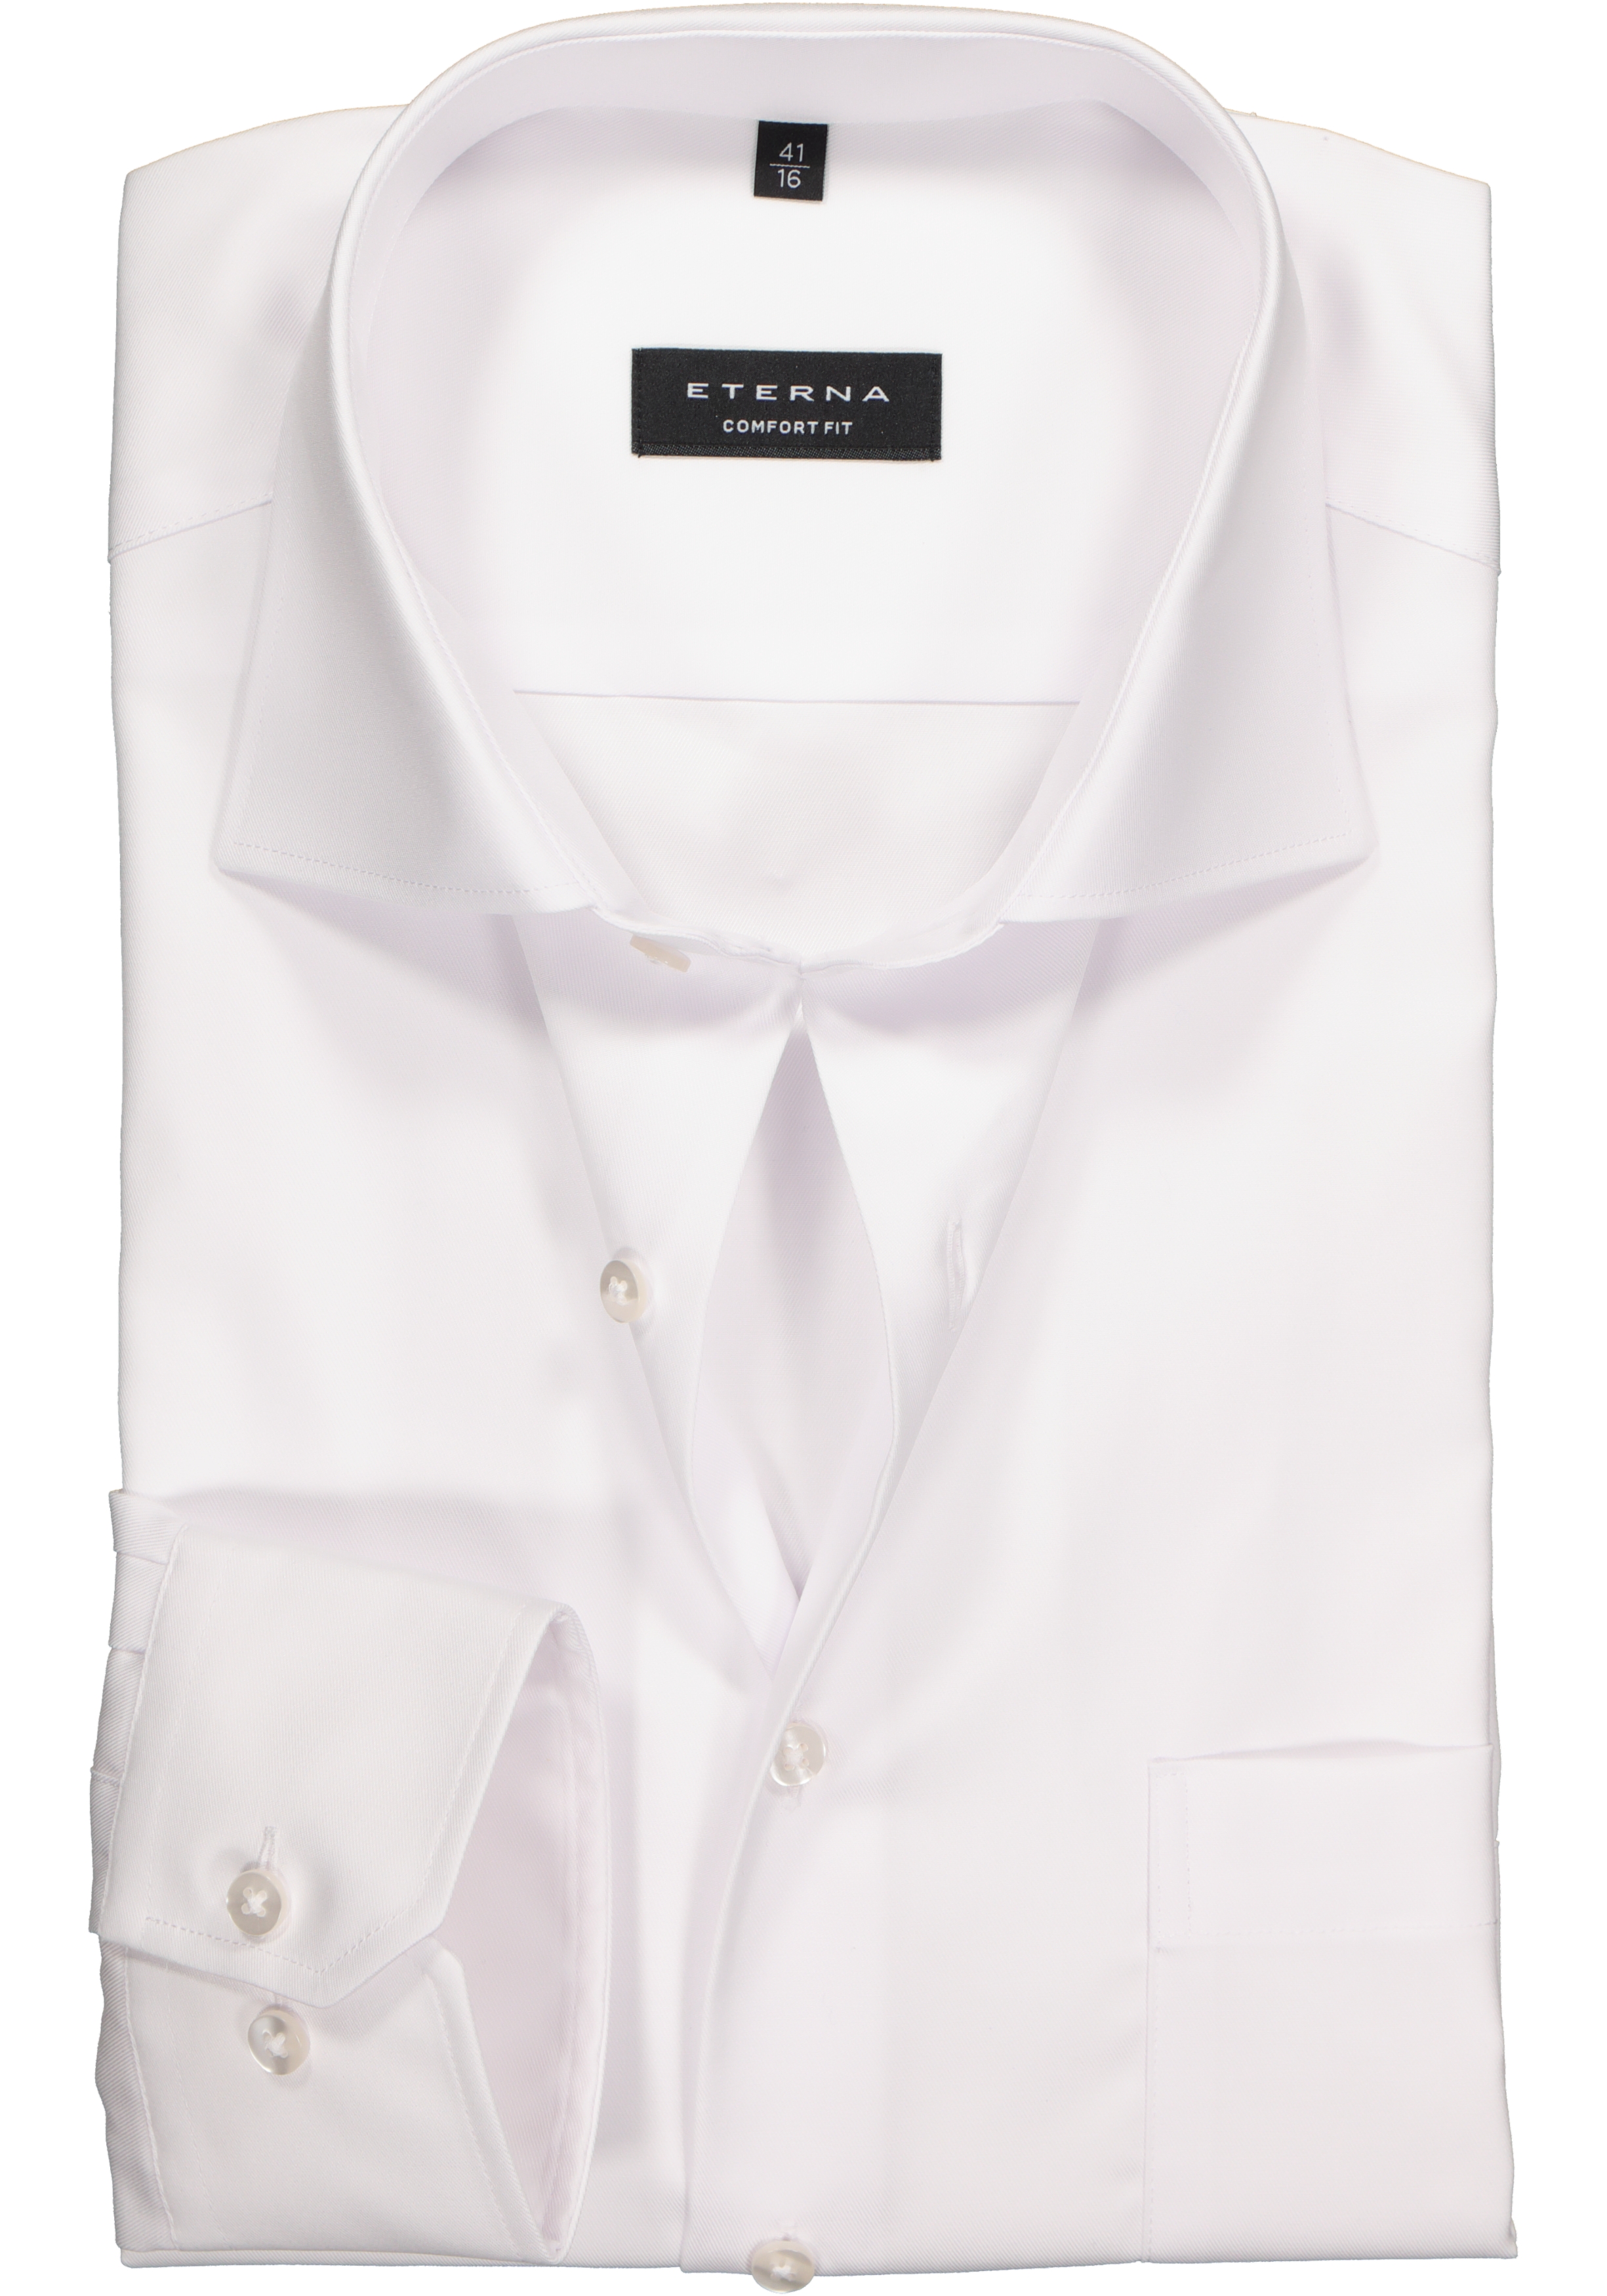 ETERNA comfort fit overhemd, mouwlengte 72cm, niet doorschijnend twill heren overhemd, wit